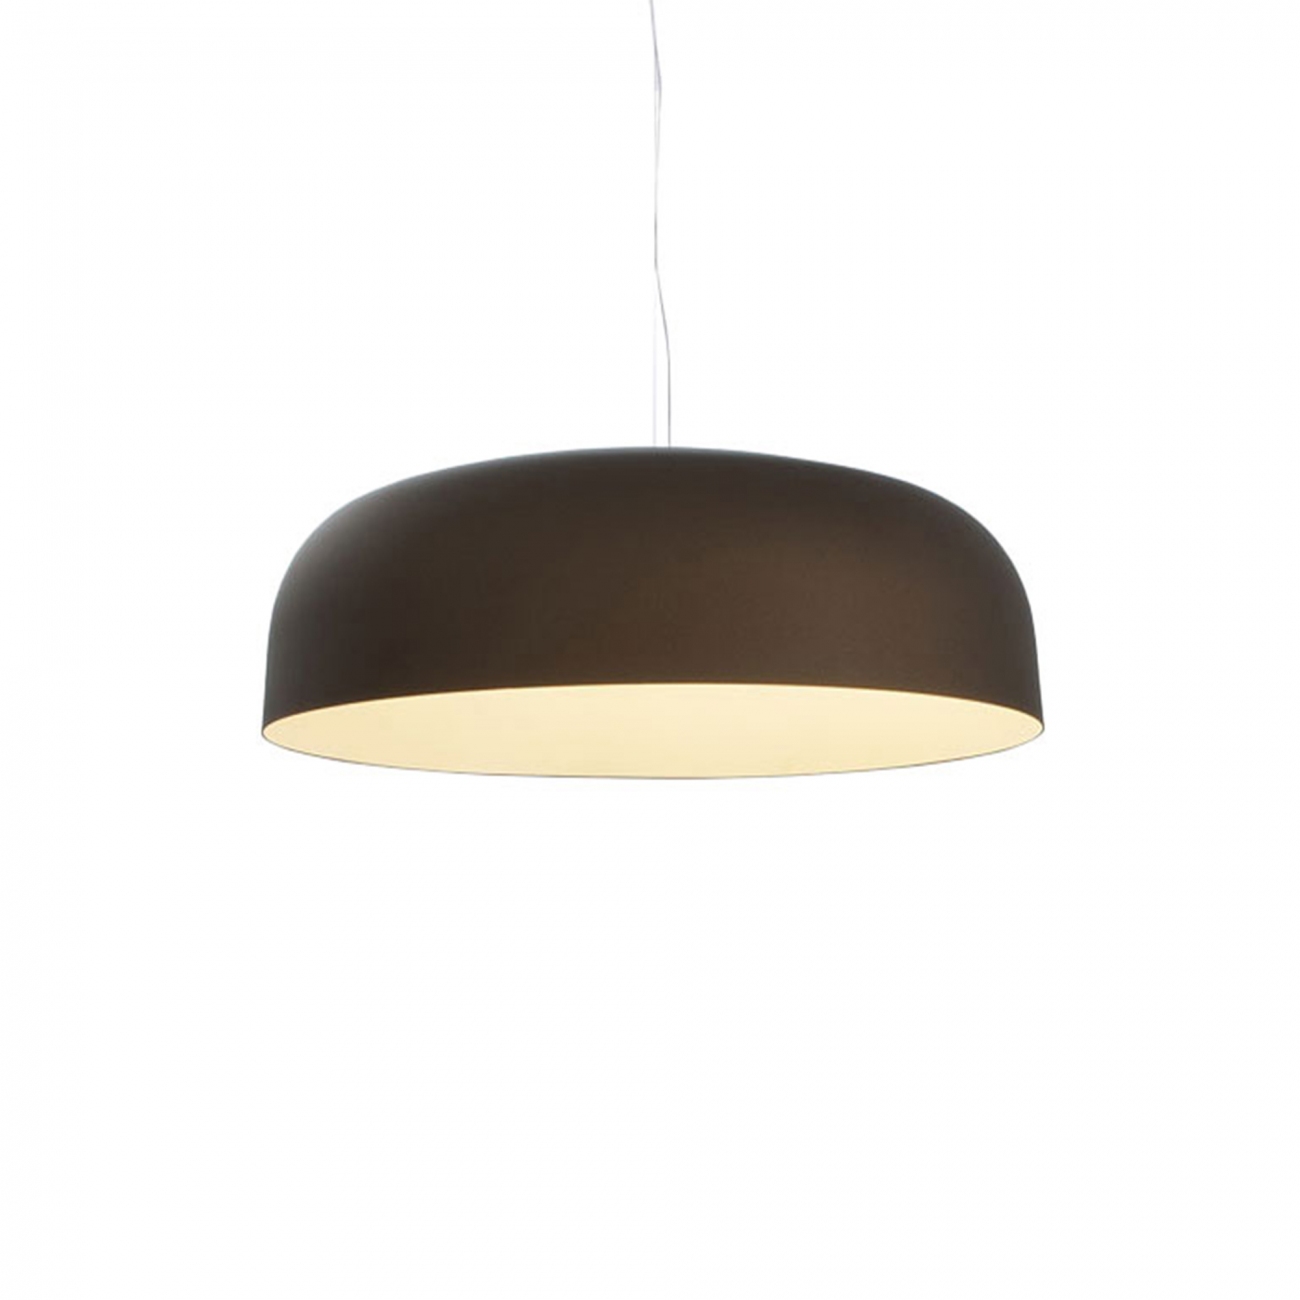 OLuce Canopy 421/L Suspension lamp